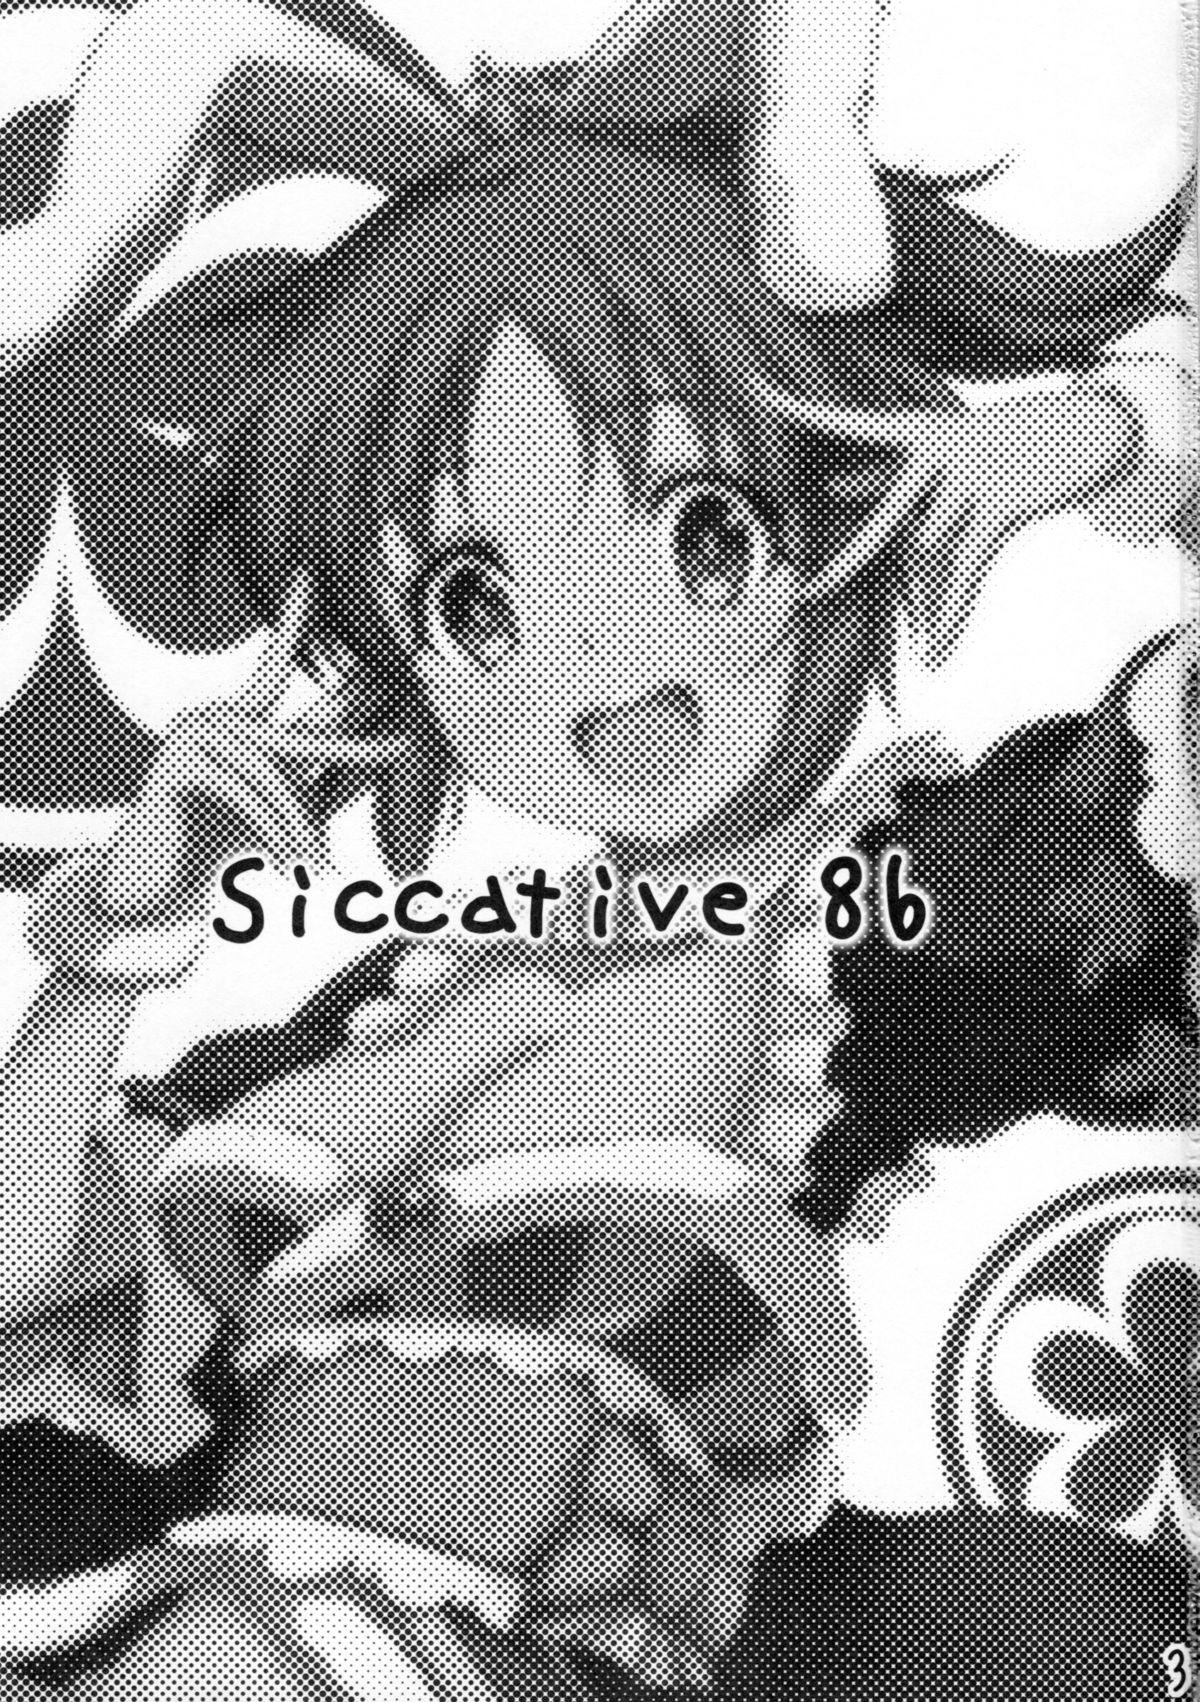 Siccative 86 1